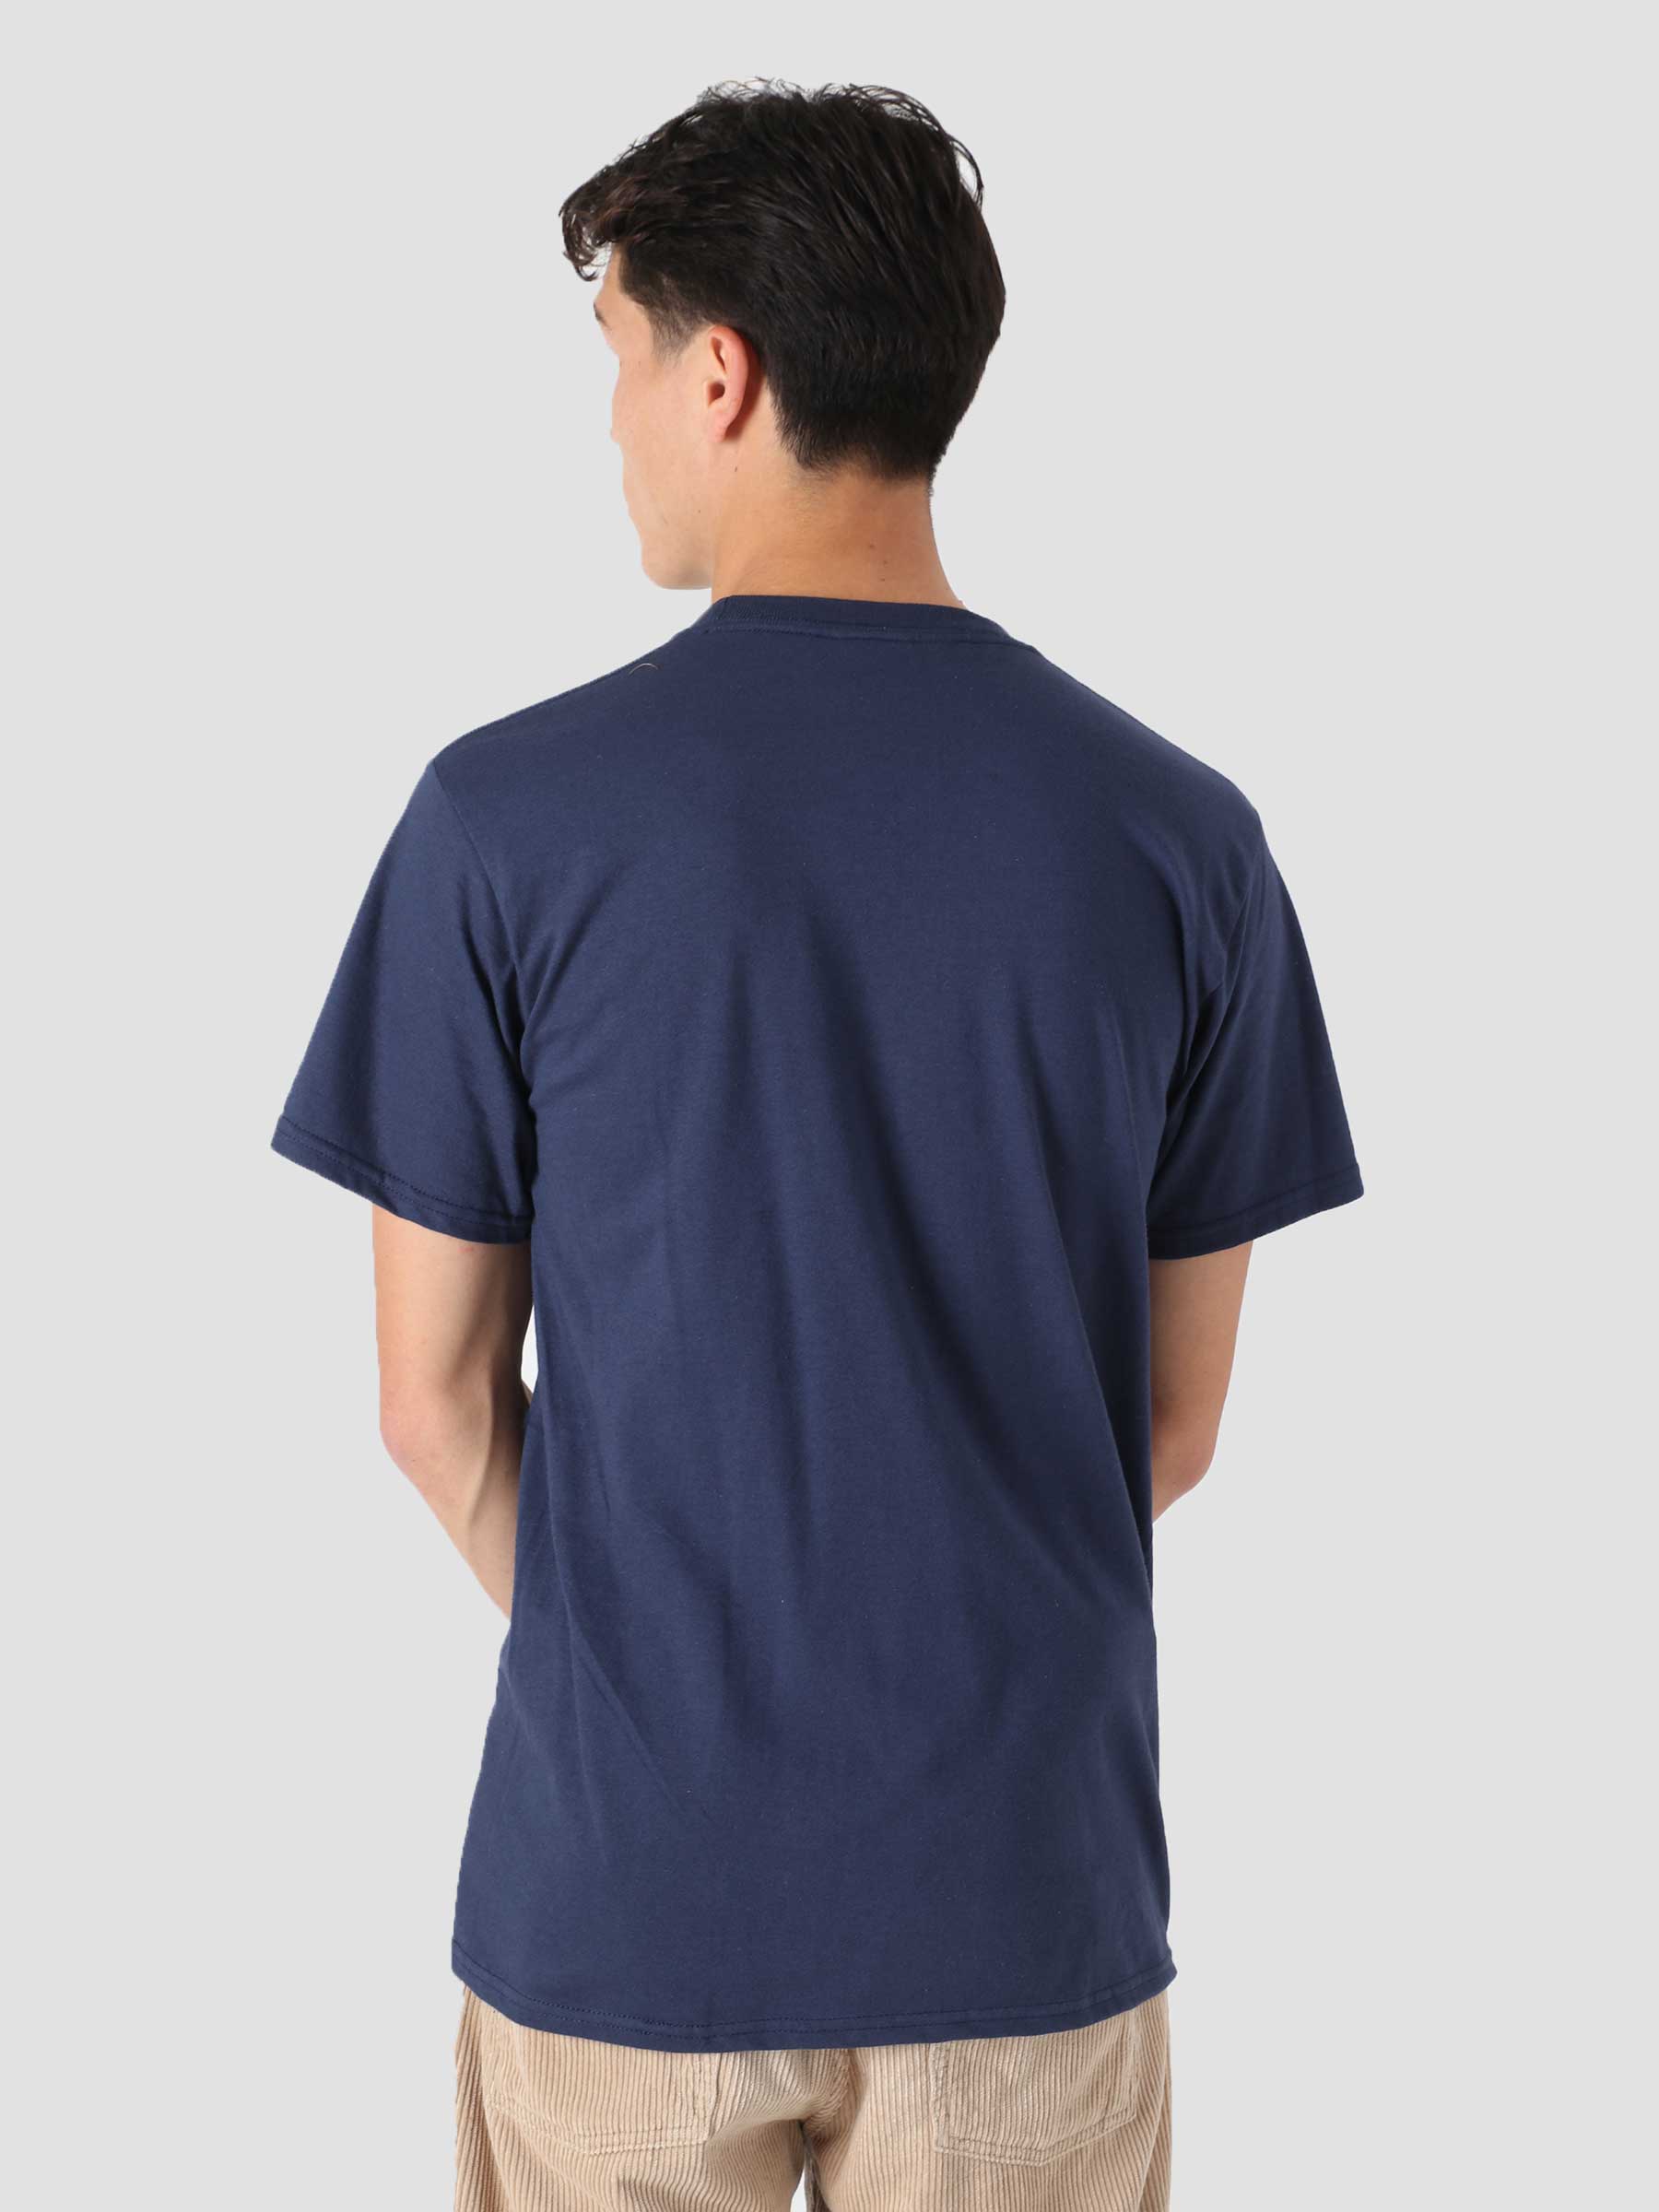 Daisy Age T-Shirt Navy TS01517-NAVY